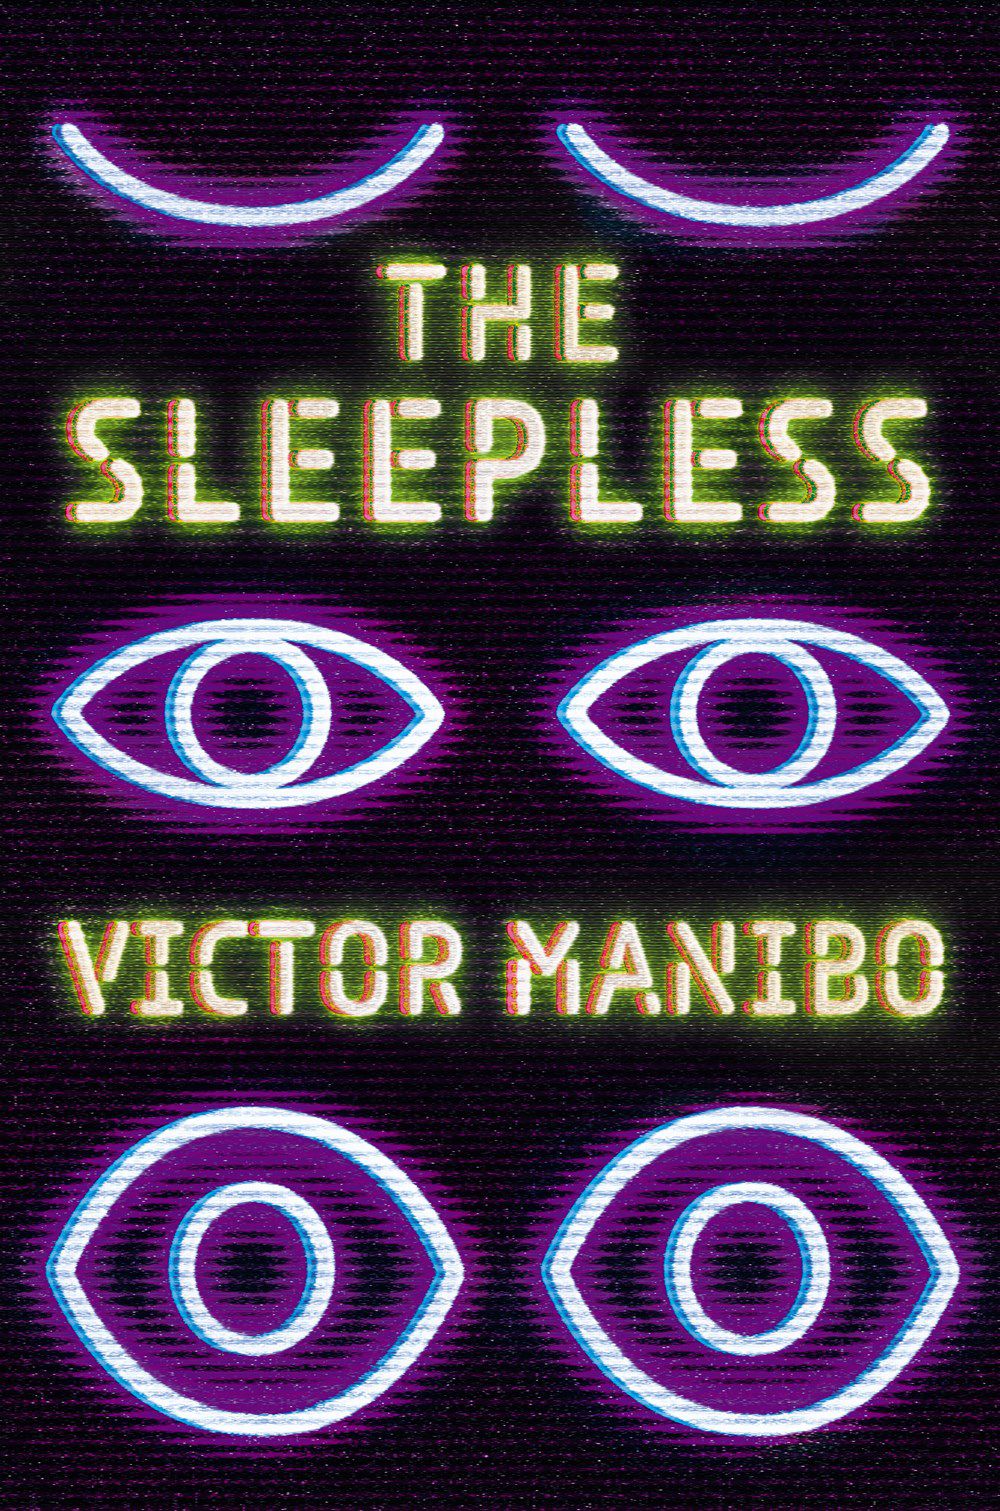 Immagine di copertina di The Sleepless di Victor Manibo, con tre paia di occhi in luci al neon che si aprono gradualmente.